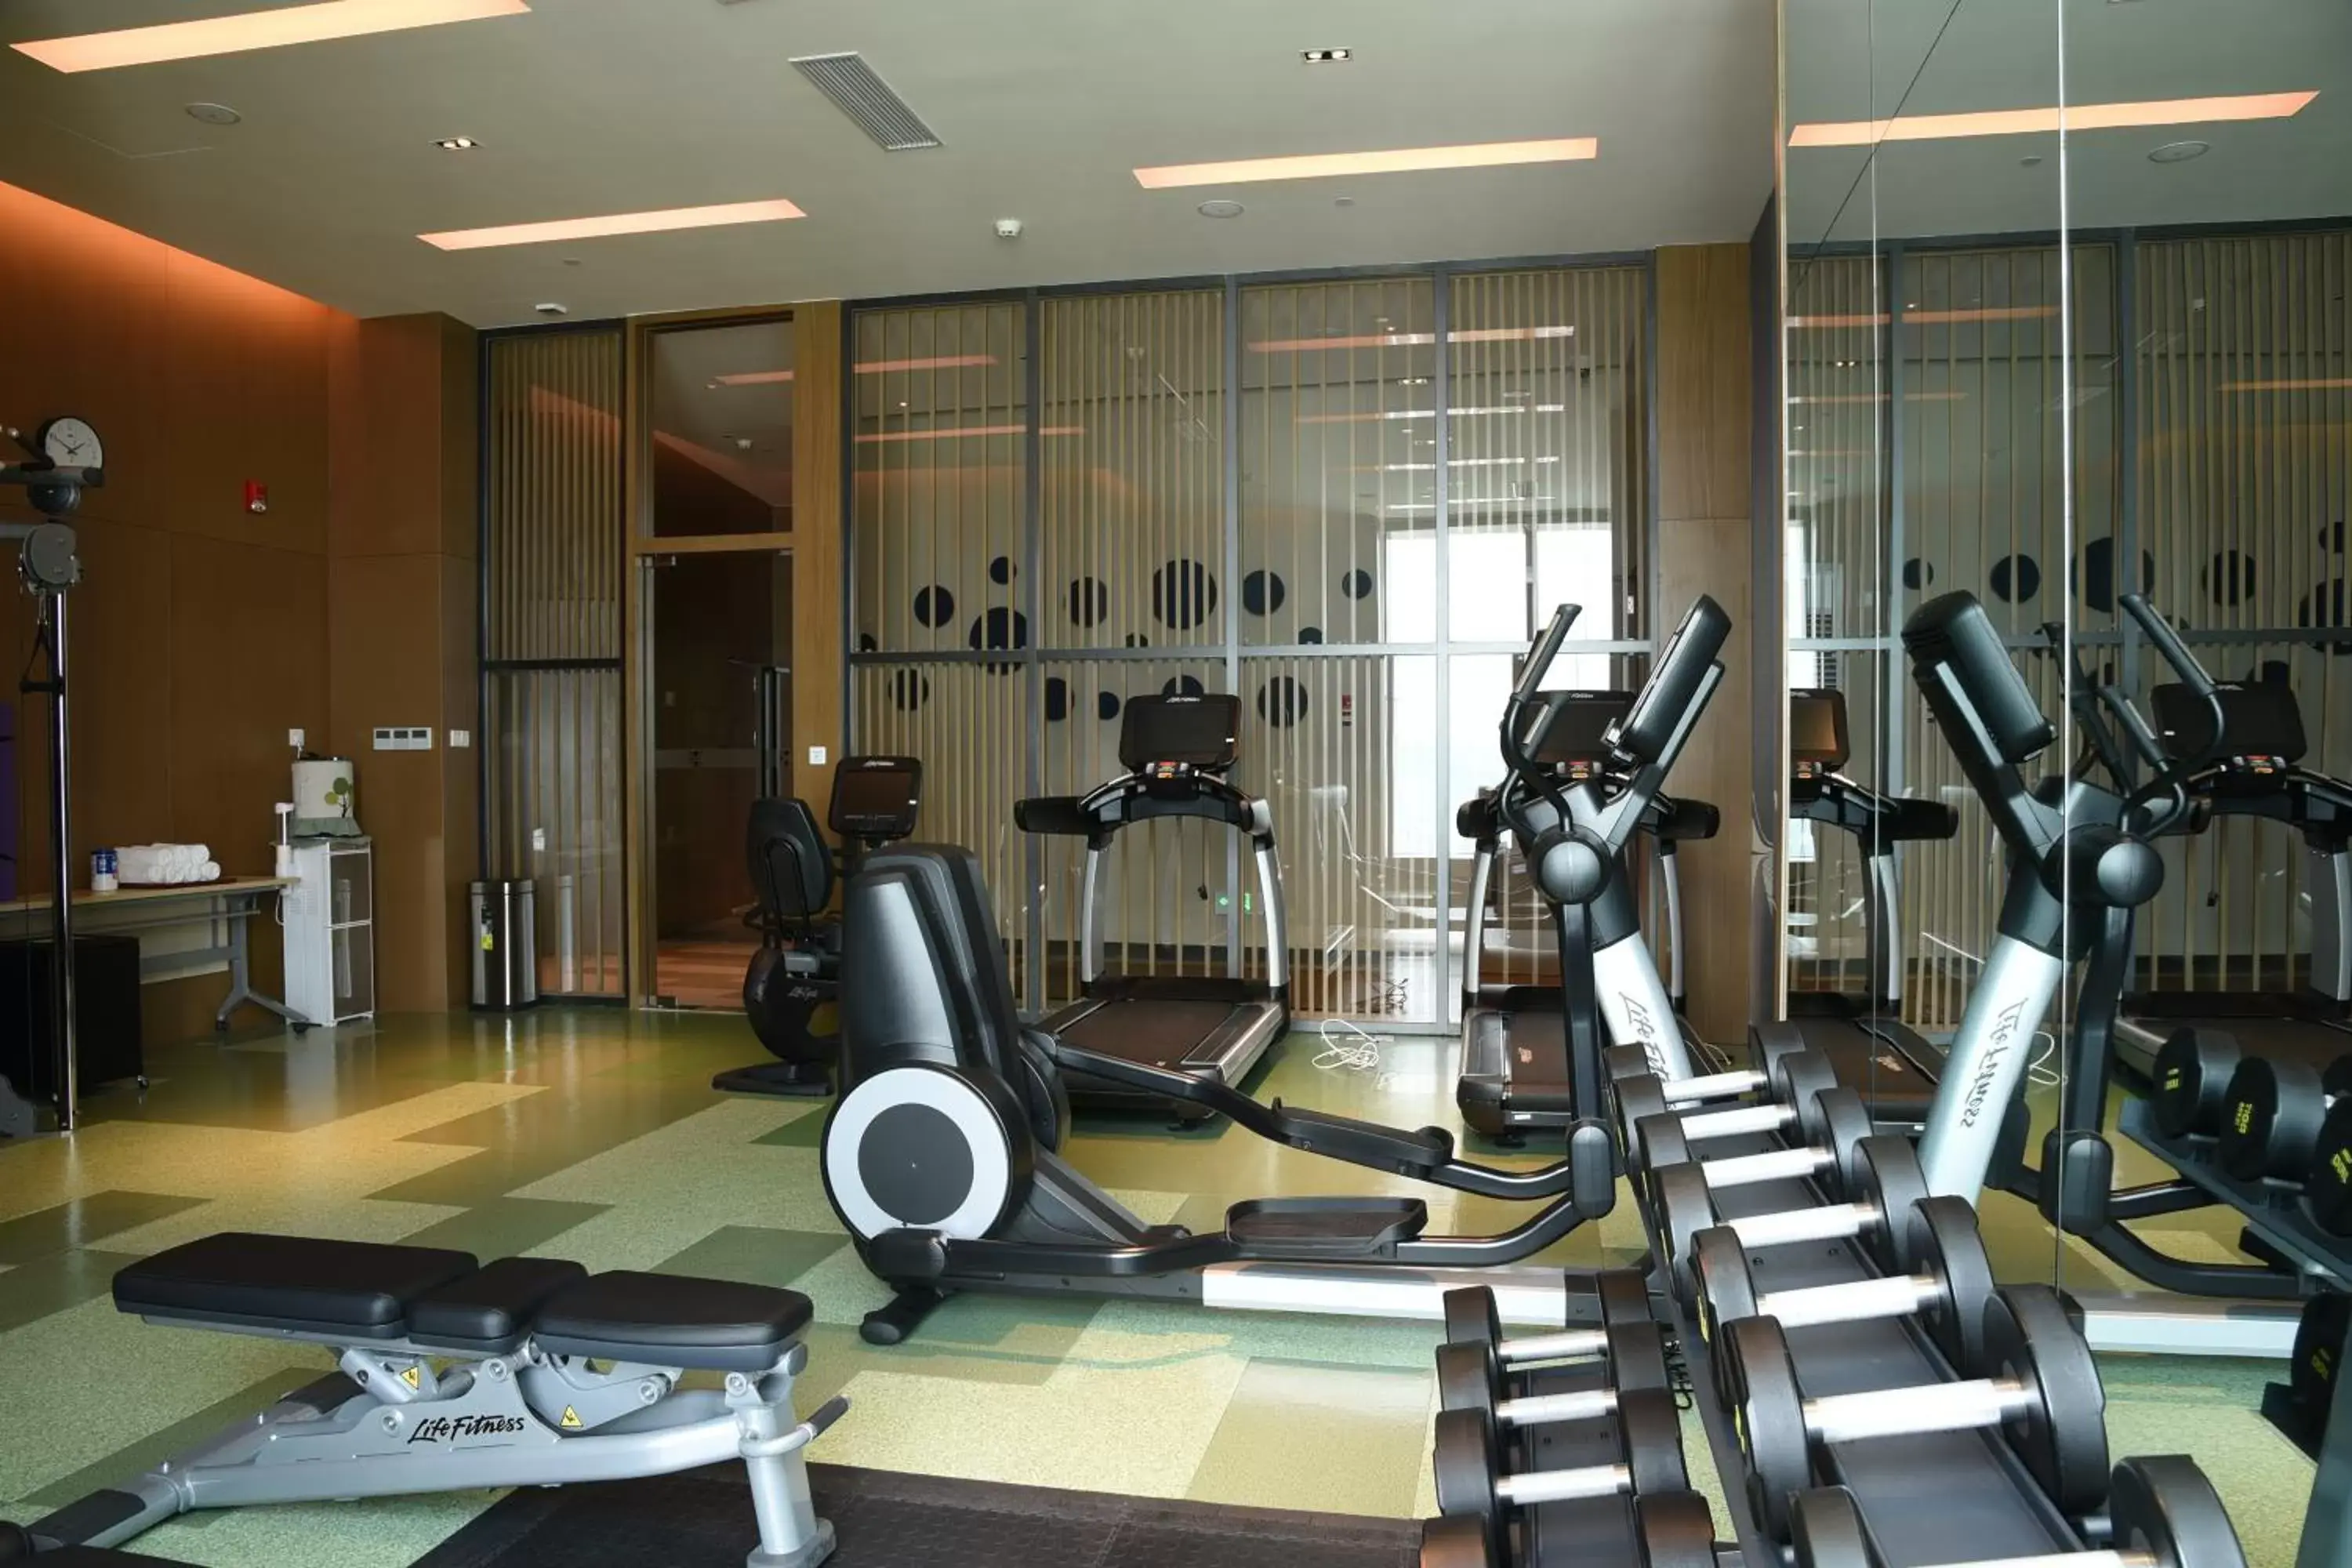 Fitness centre/facilities, Fitness Center/Facilities in Hyatt Place Sanya City Center